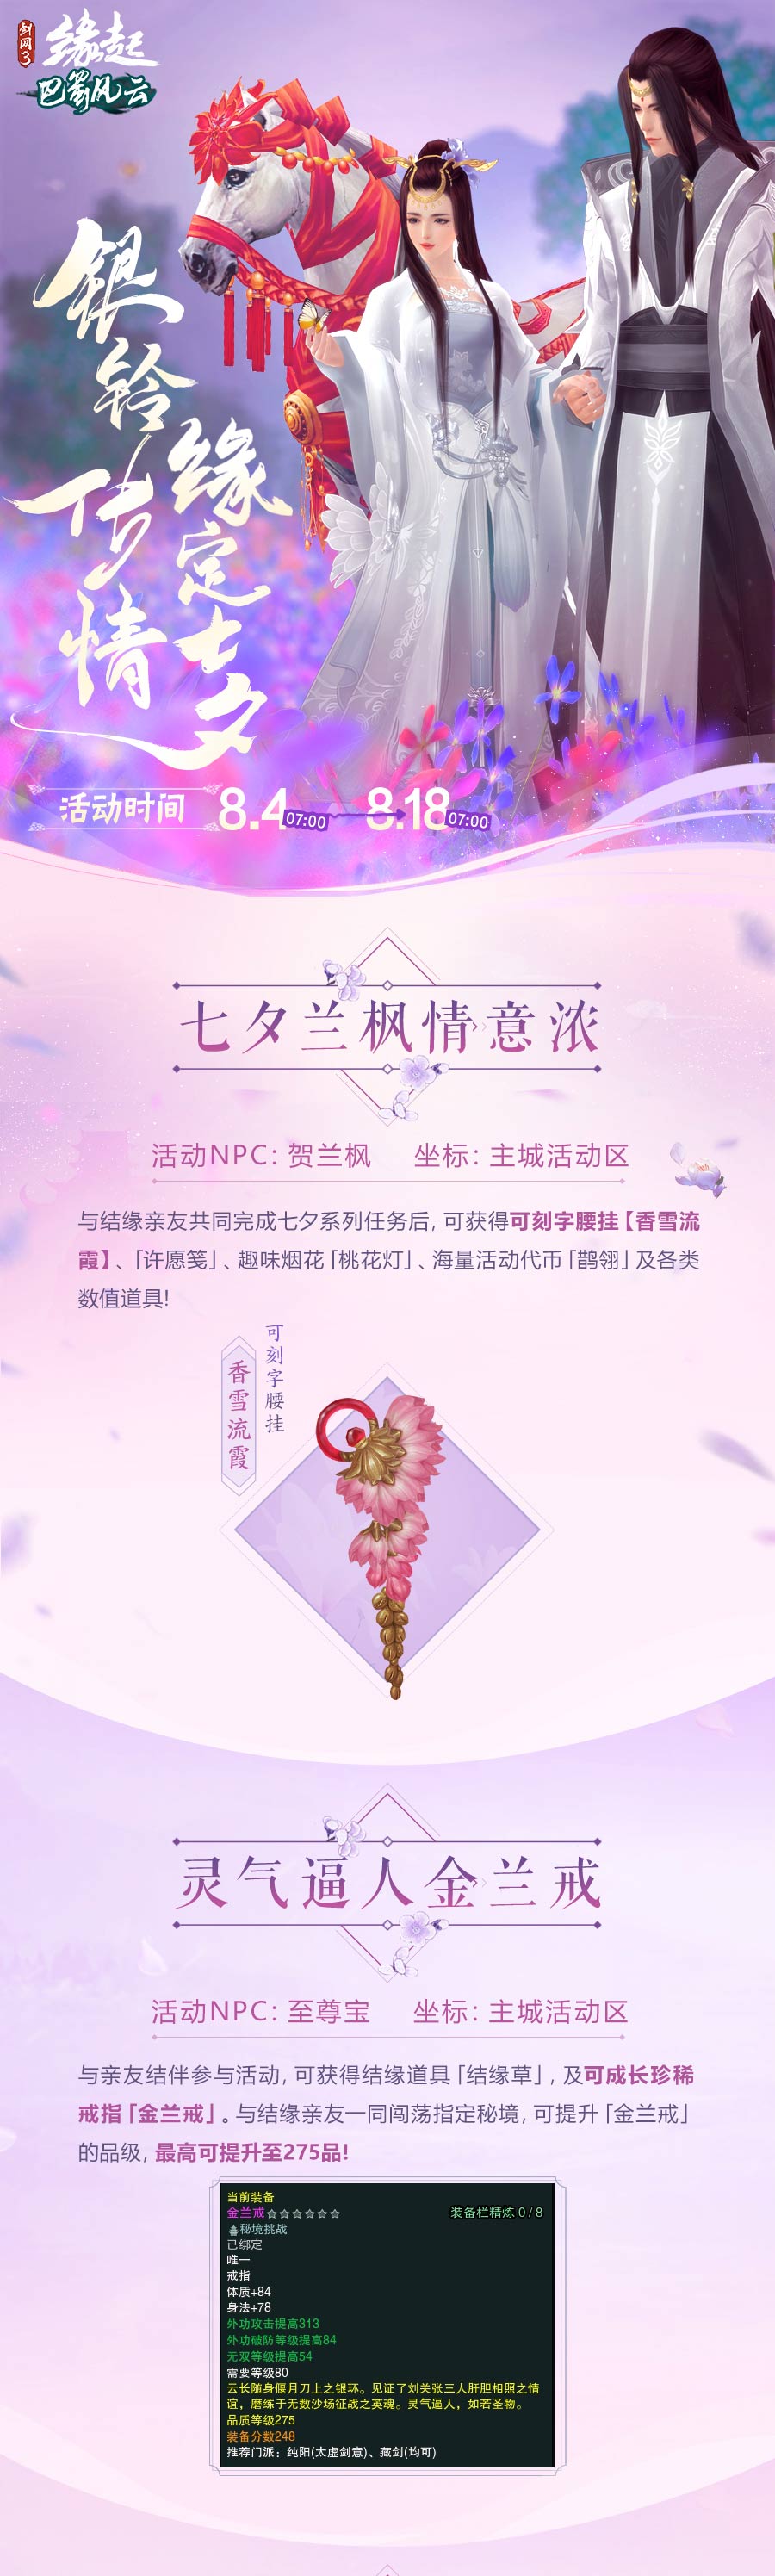 《剑网3缘起》七夕活动浪漫开启 全新秘境今日上线